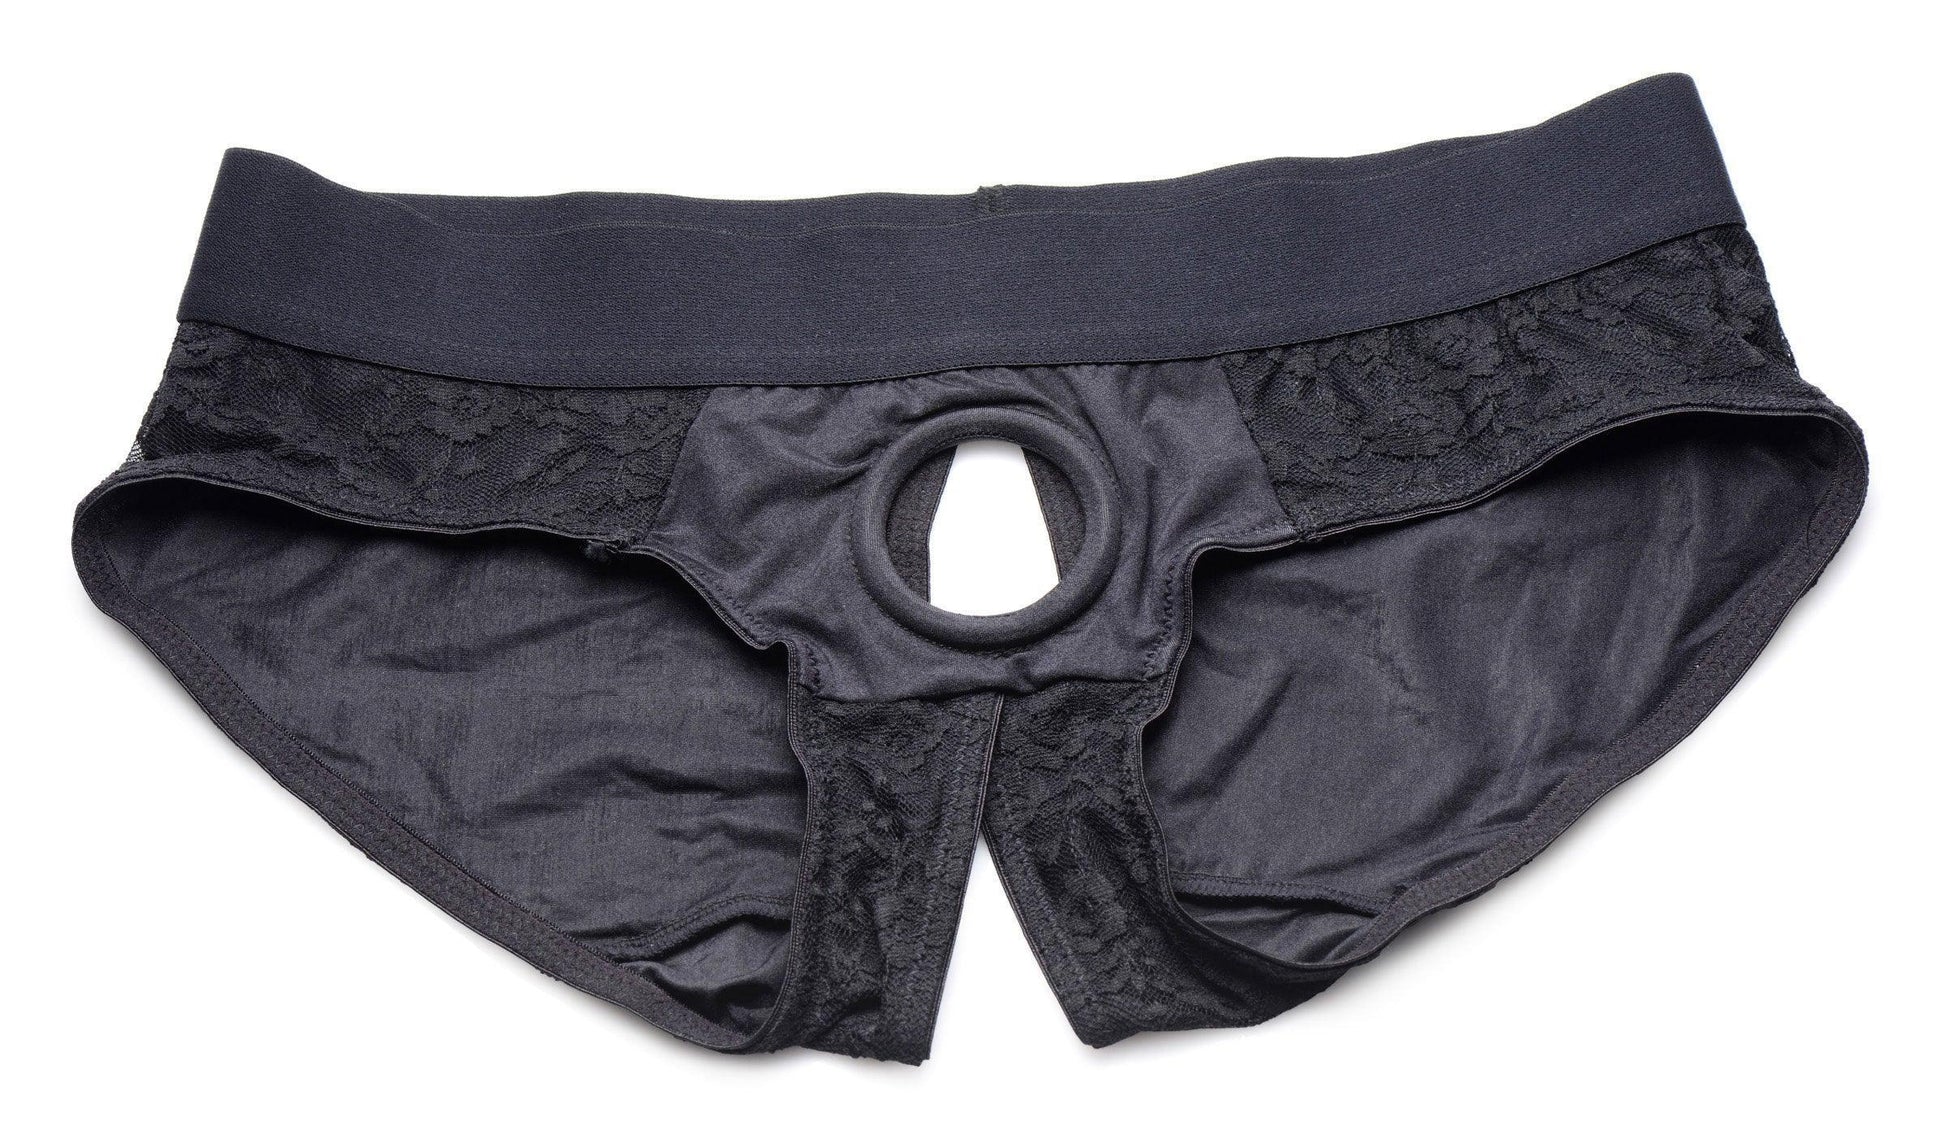 Lace Envy Black Crotchless Panty Harness - L/xl - My Sex Toy Hub